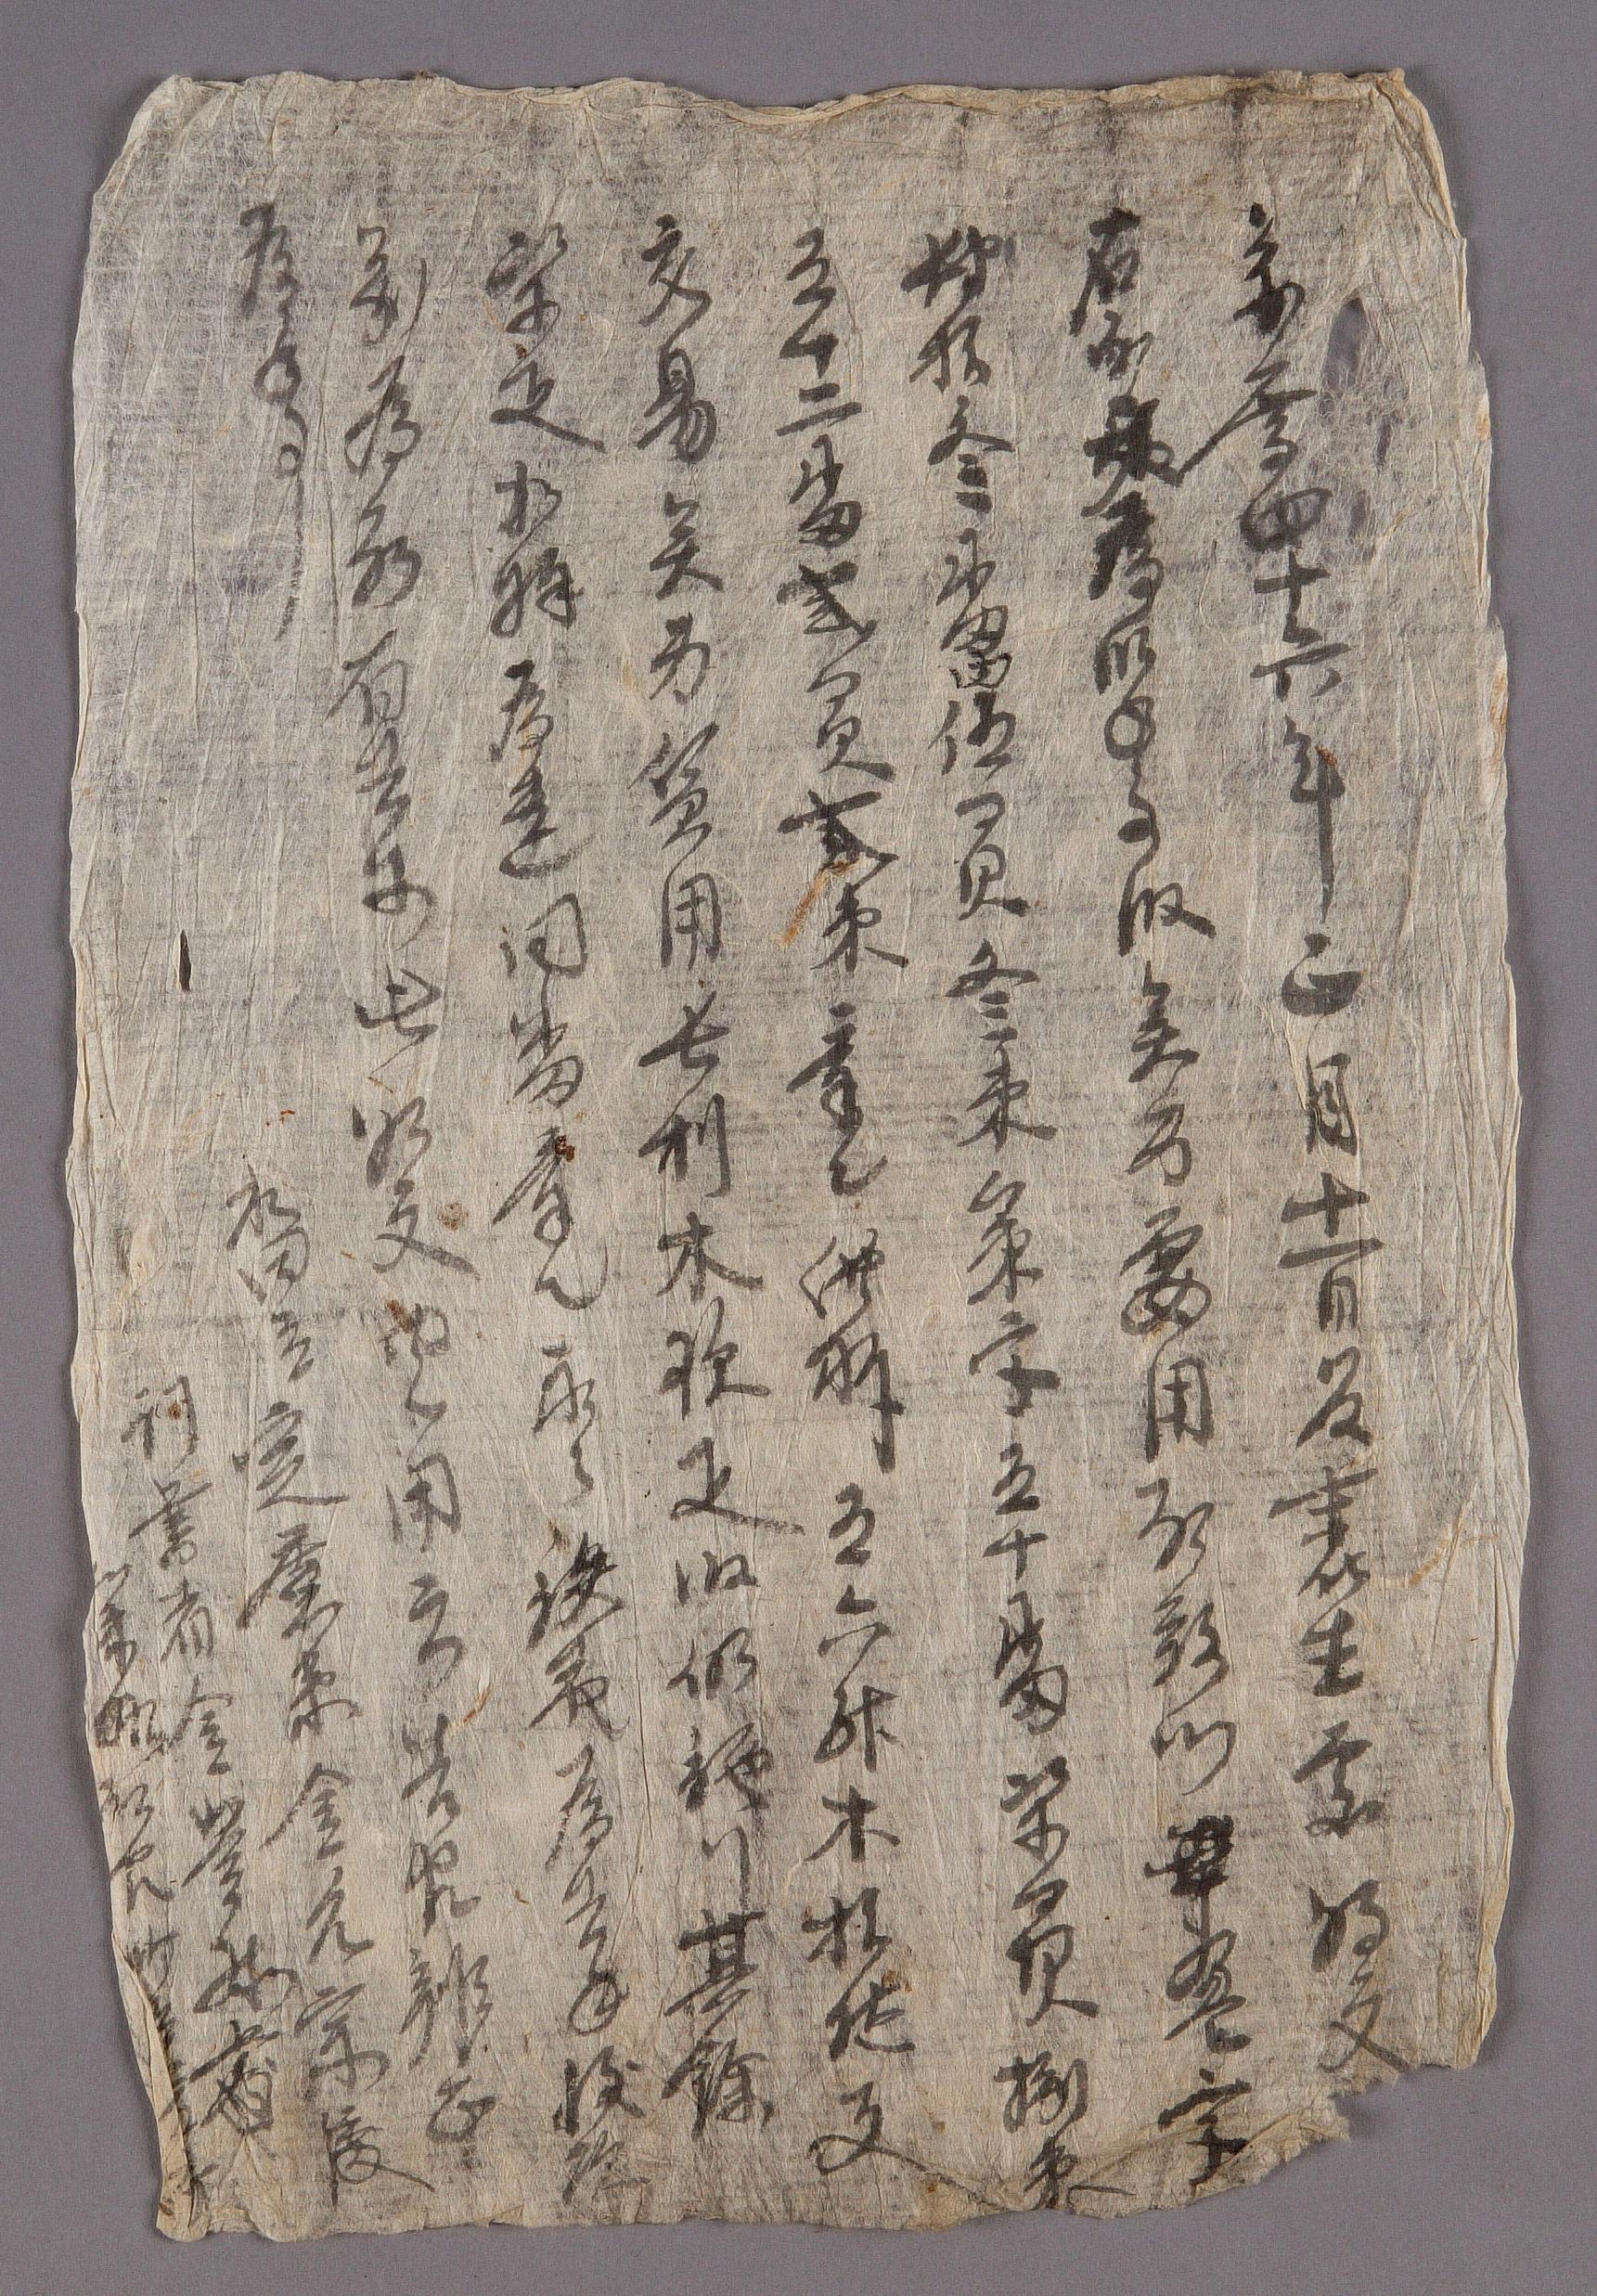 김윤종(金允宗)이 1681년에 작성한 전답 방매문기